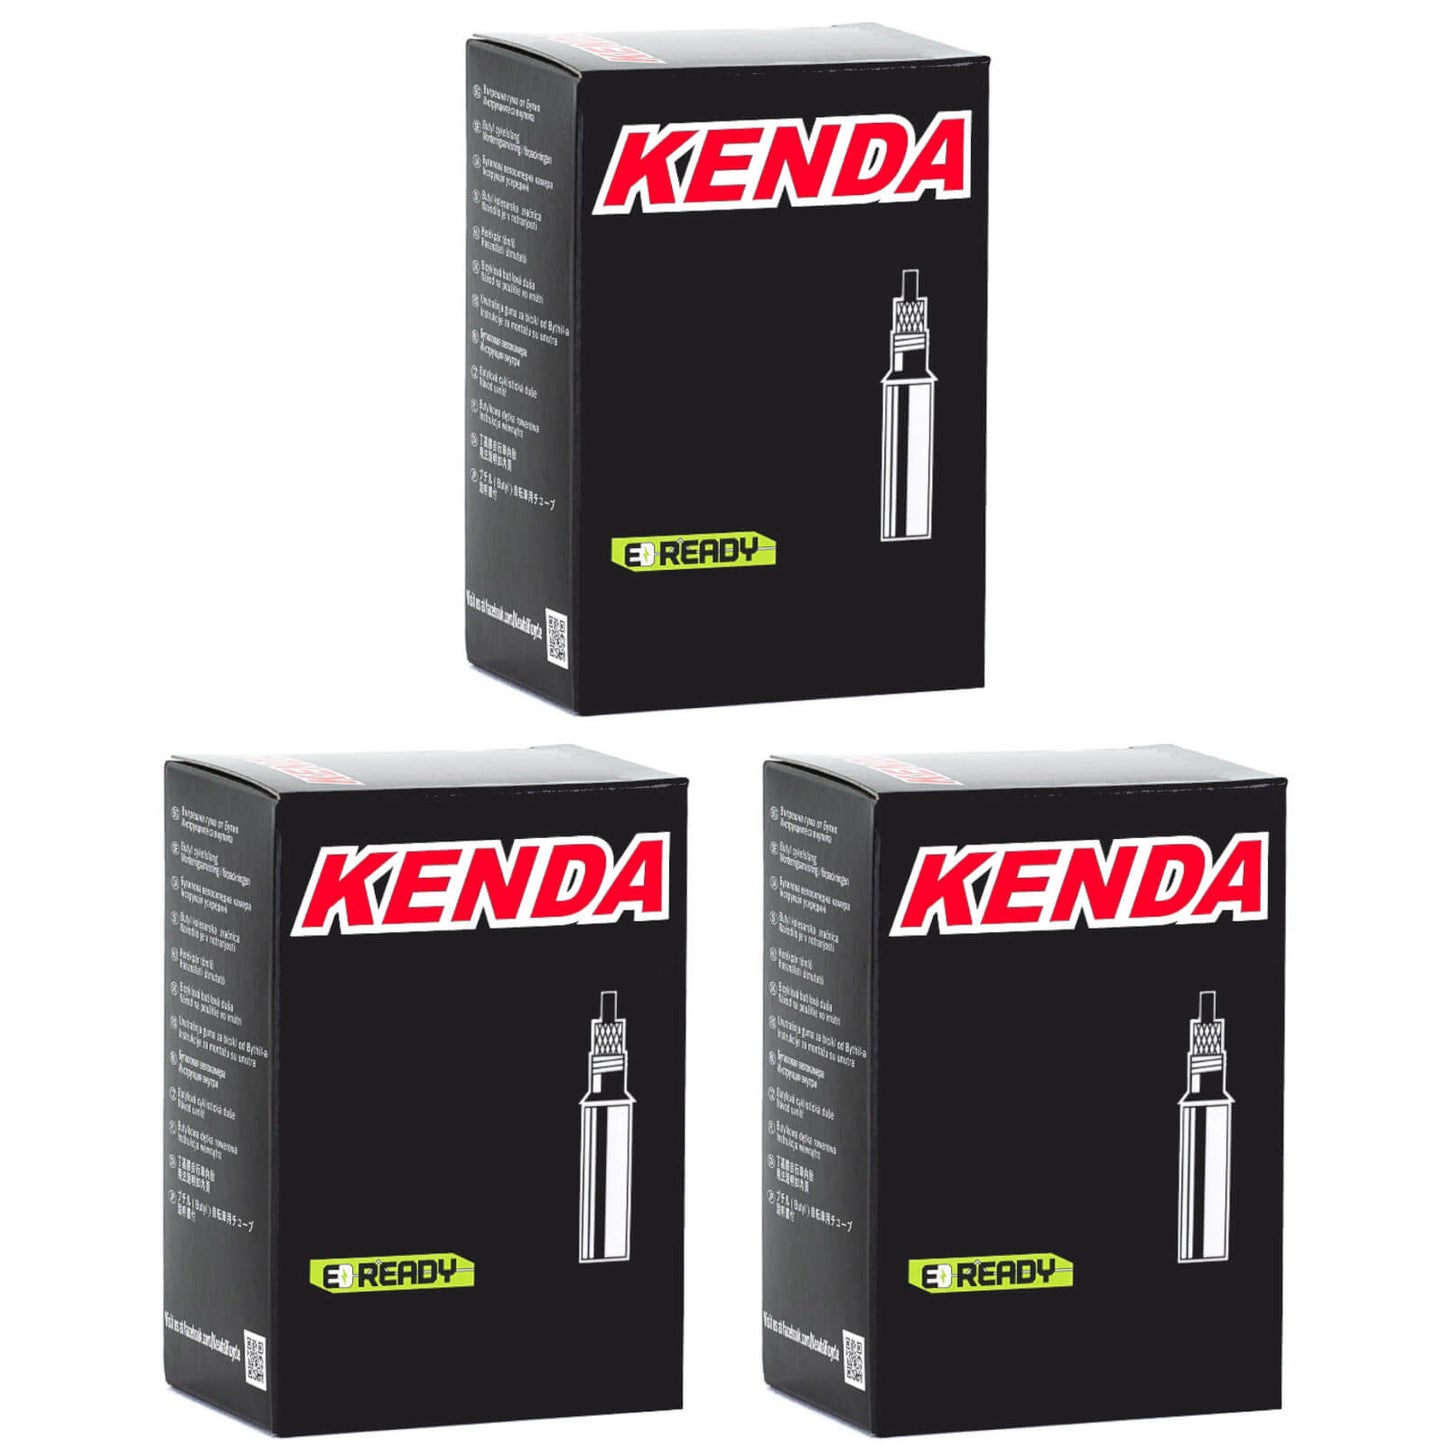 Kenda 700x30-43c Removable Core 60mm 700c Presta Valve Bike Inner Tube Pack of 3